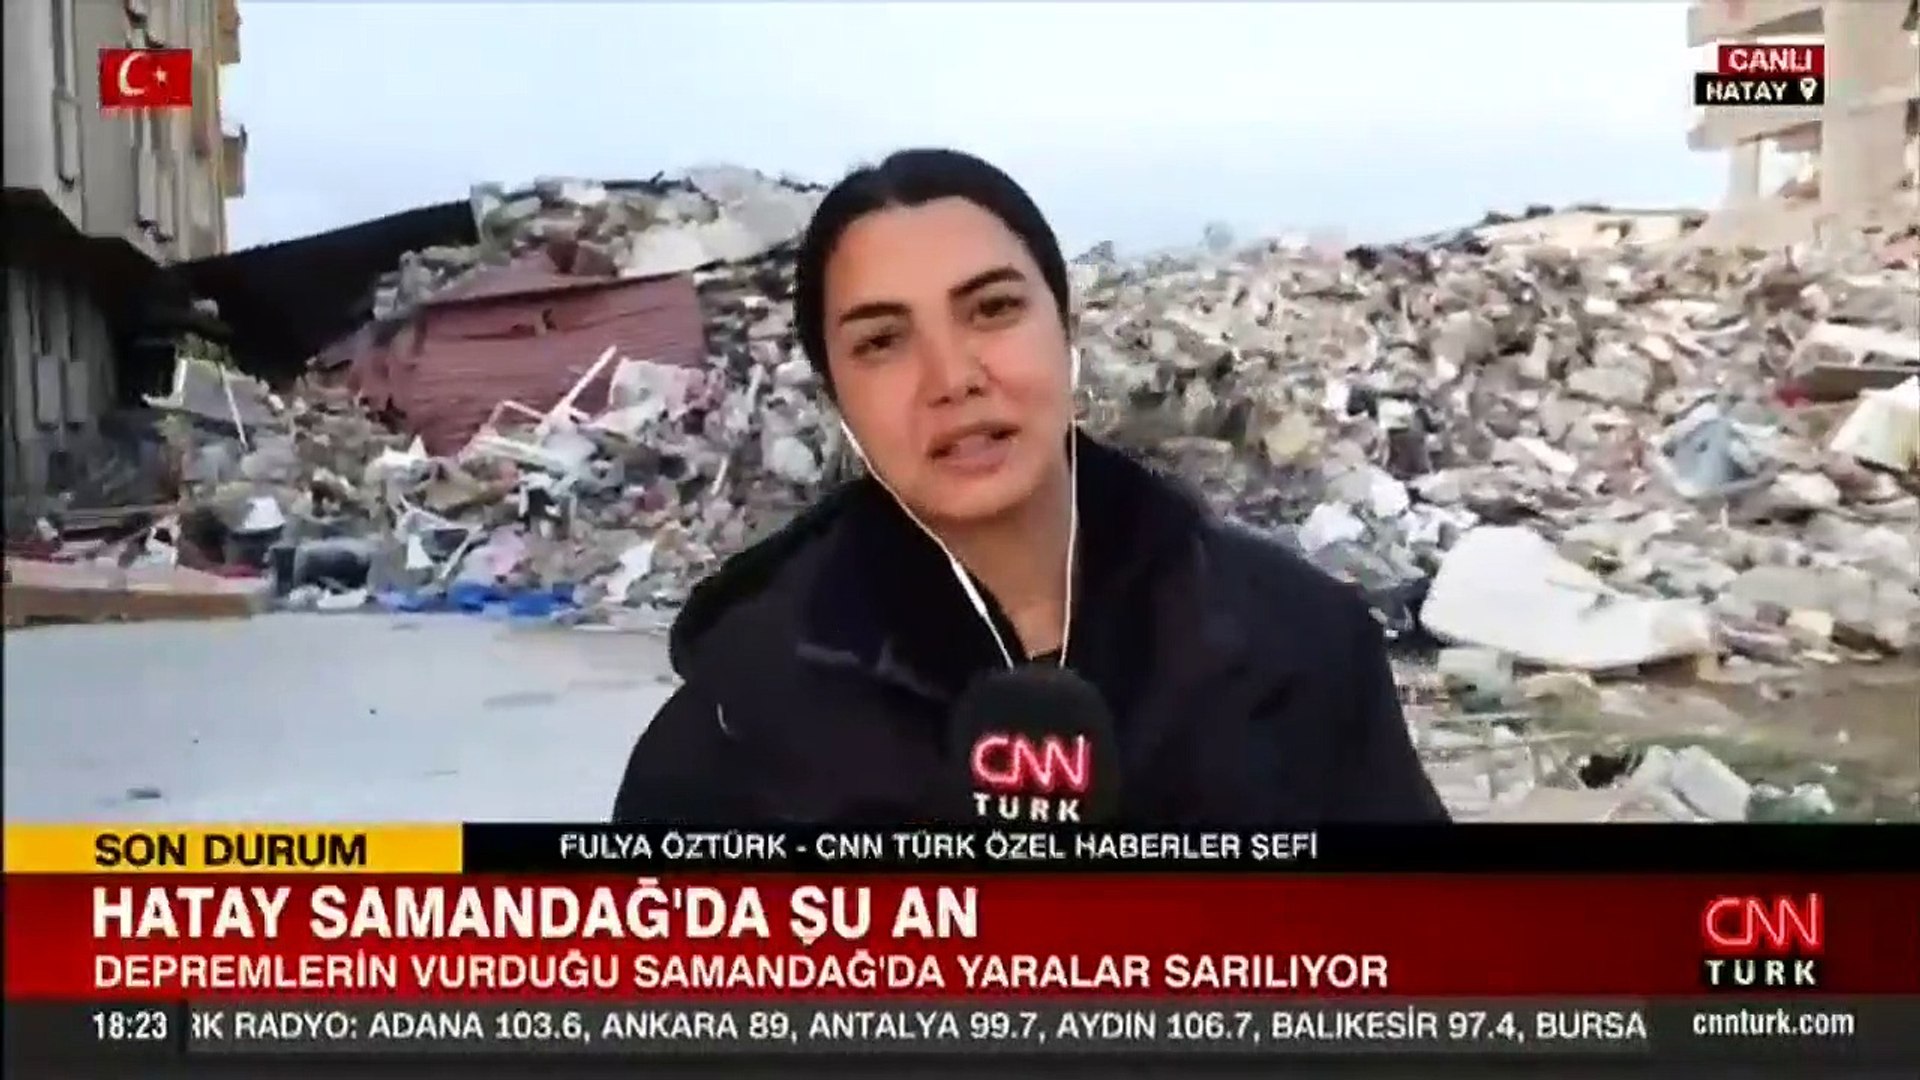 CNN TÜRK ekibi bölgeden bildirdi! Samandağ'da son durum ne? - Dailymotion  Video